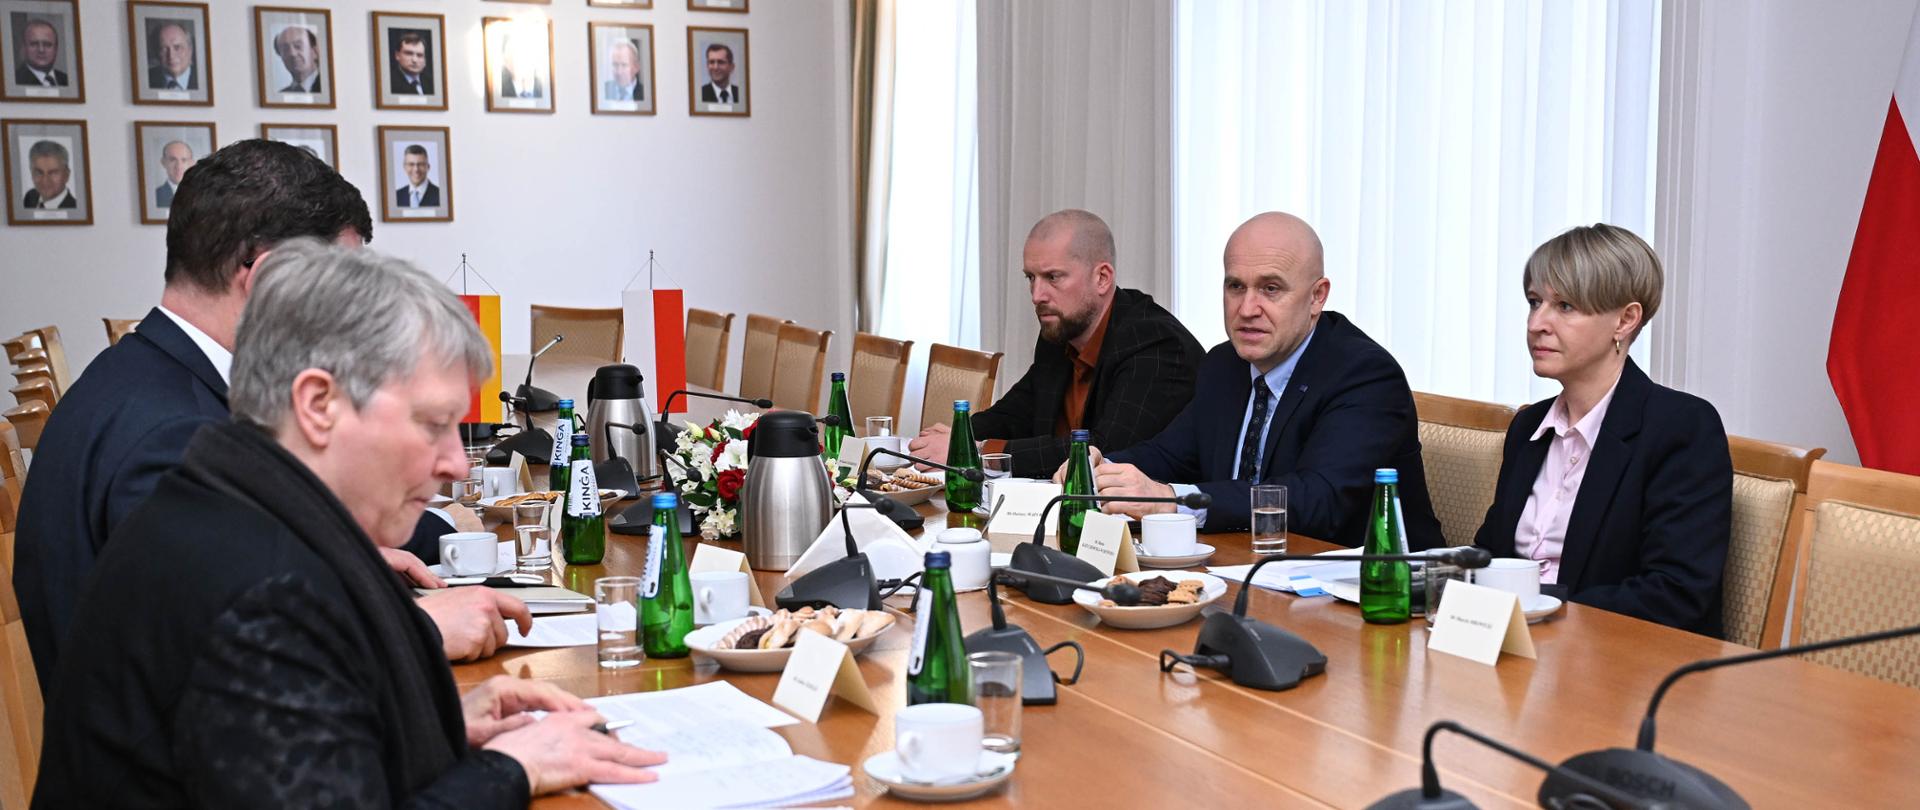 Wiceminister sprawiedliwości Dariusz Mazur spotkał się z Sekretarzem Stanu ds. Federalnych i Europejskich, Spraw Międzynarodowych i Mediów Nadrenii Północnej-Westfalii Markiem Speichem